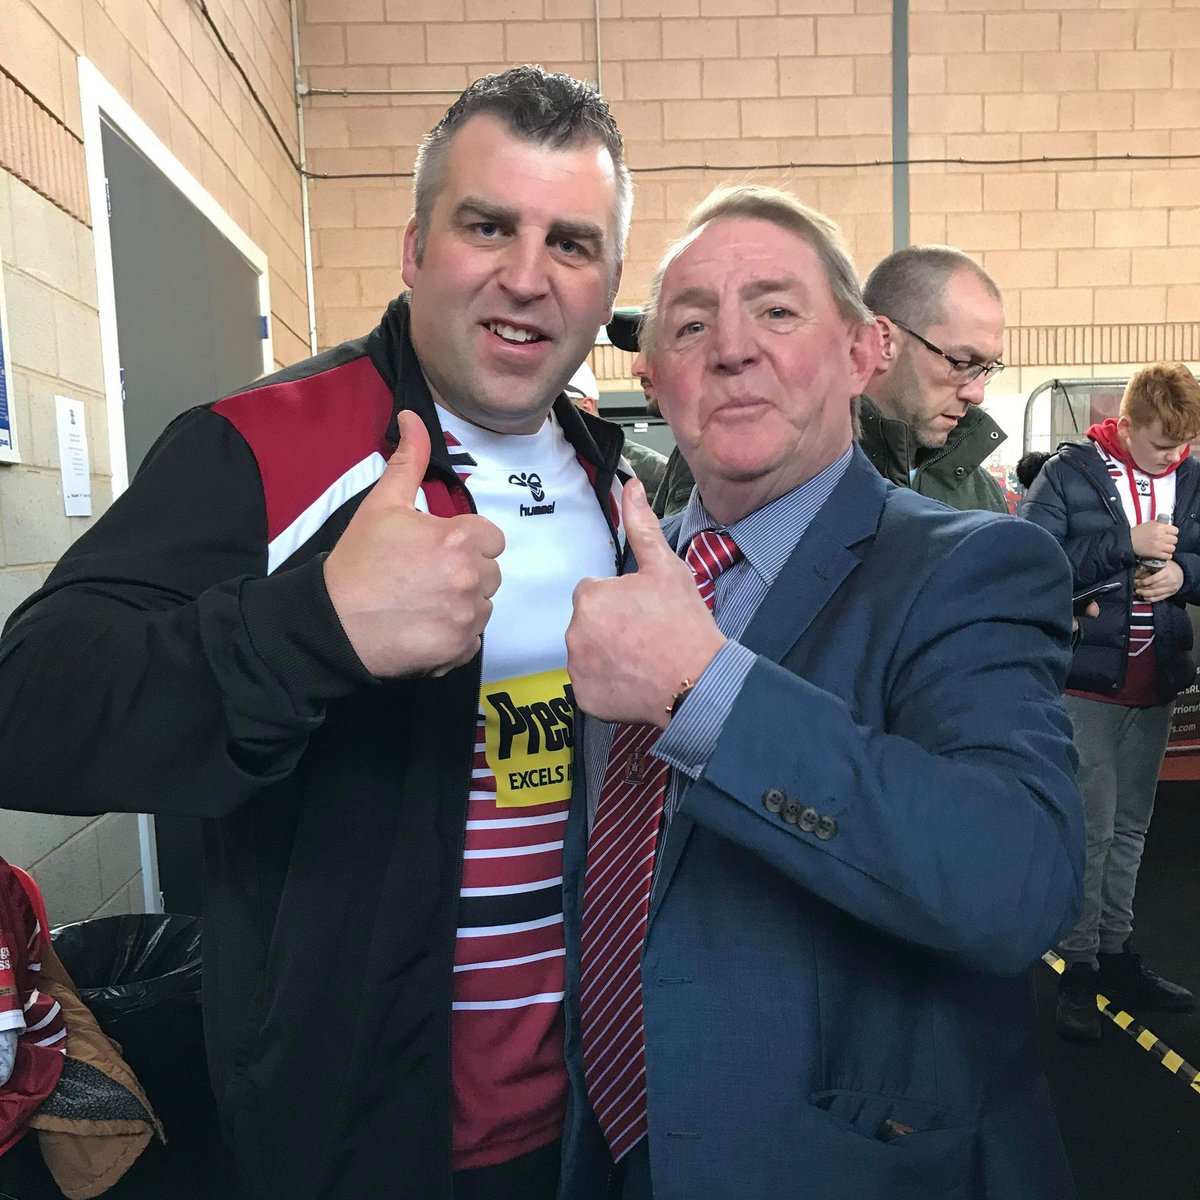 Andy Gregory showng his support today for @WiganWarriorsRL 🍒⚪ 👍

#Thumbsupforkebsi13
#MND
#rugbylegend 
#Kebsi13 
@ElbraRangers
@CarlCumbria2017 👍